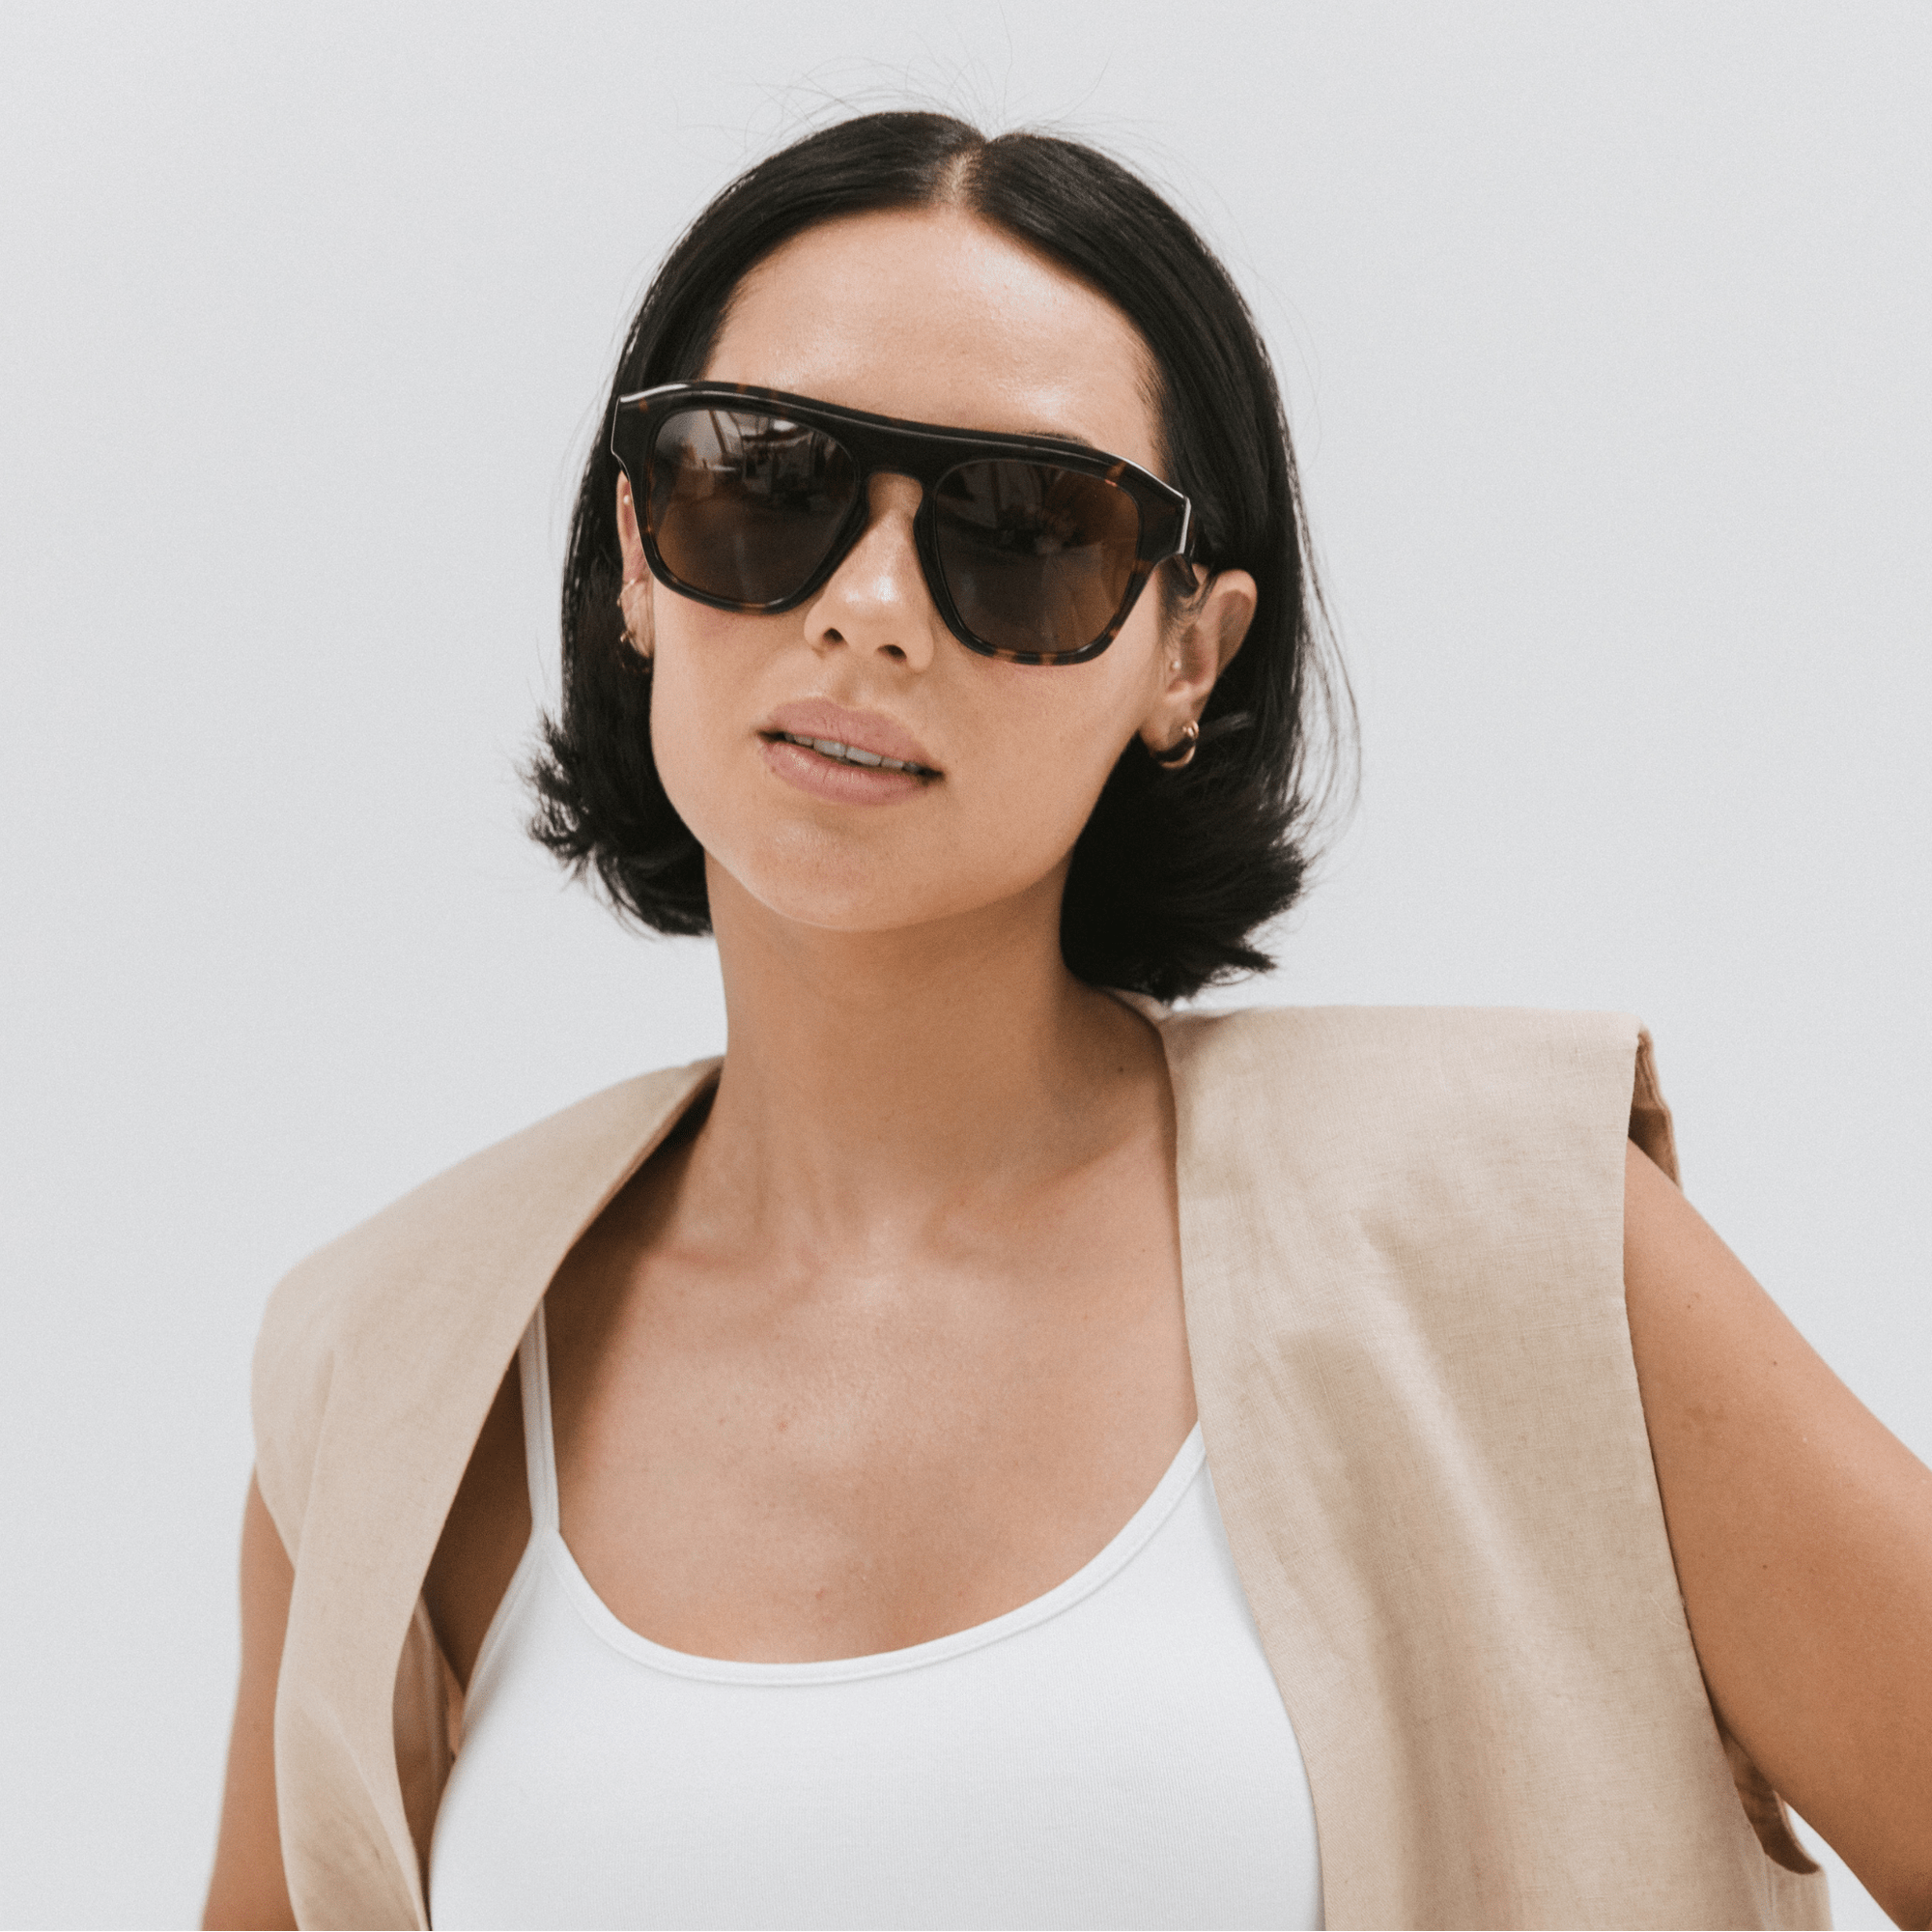 Gigi Pip sunglasses for women - Val Wayfarer Sunglasses - oversized wayfarer style women's sunglasses with an acetate frame + polarized lenses [tortoise]